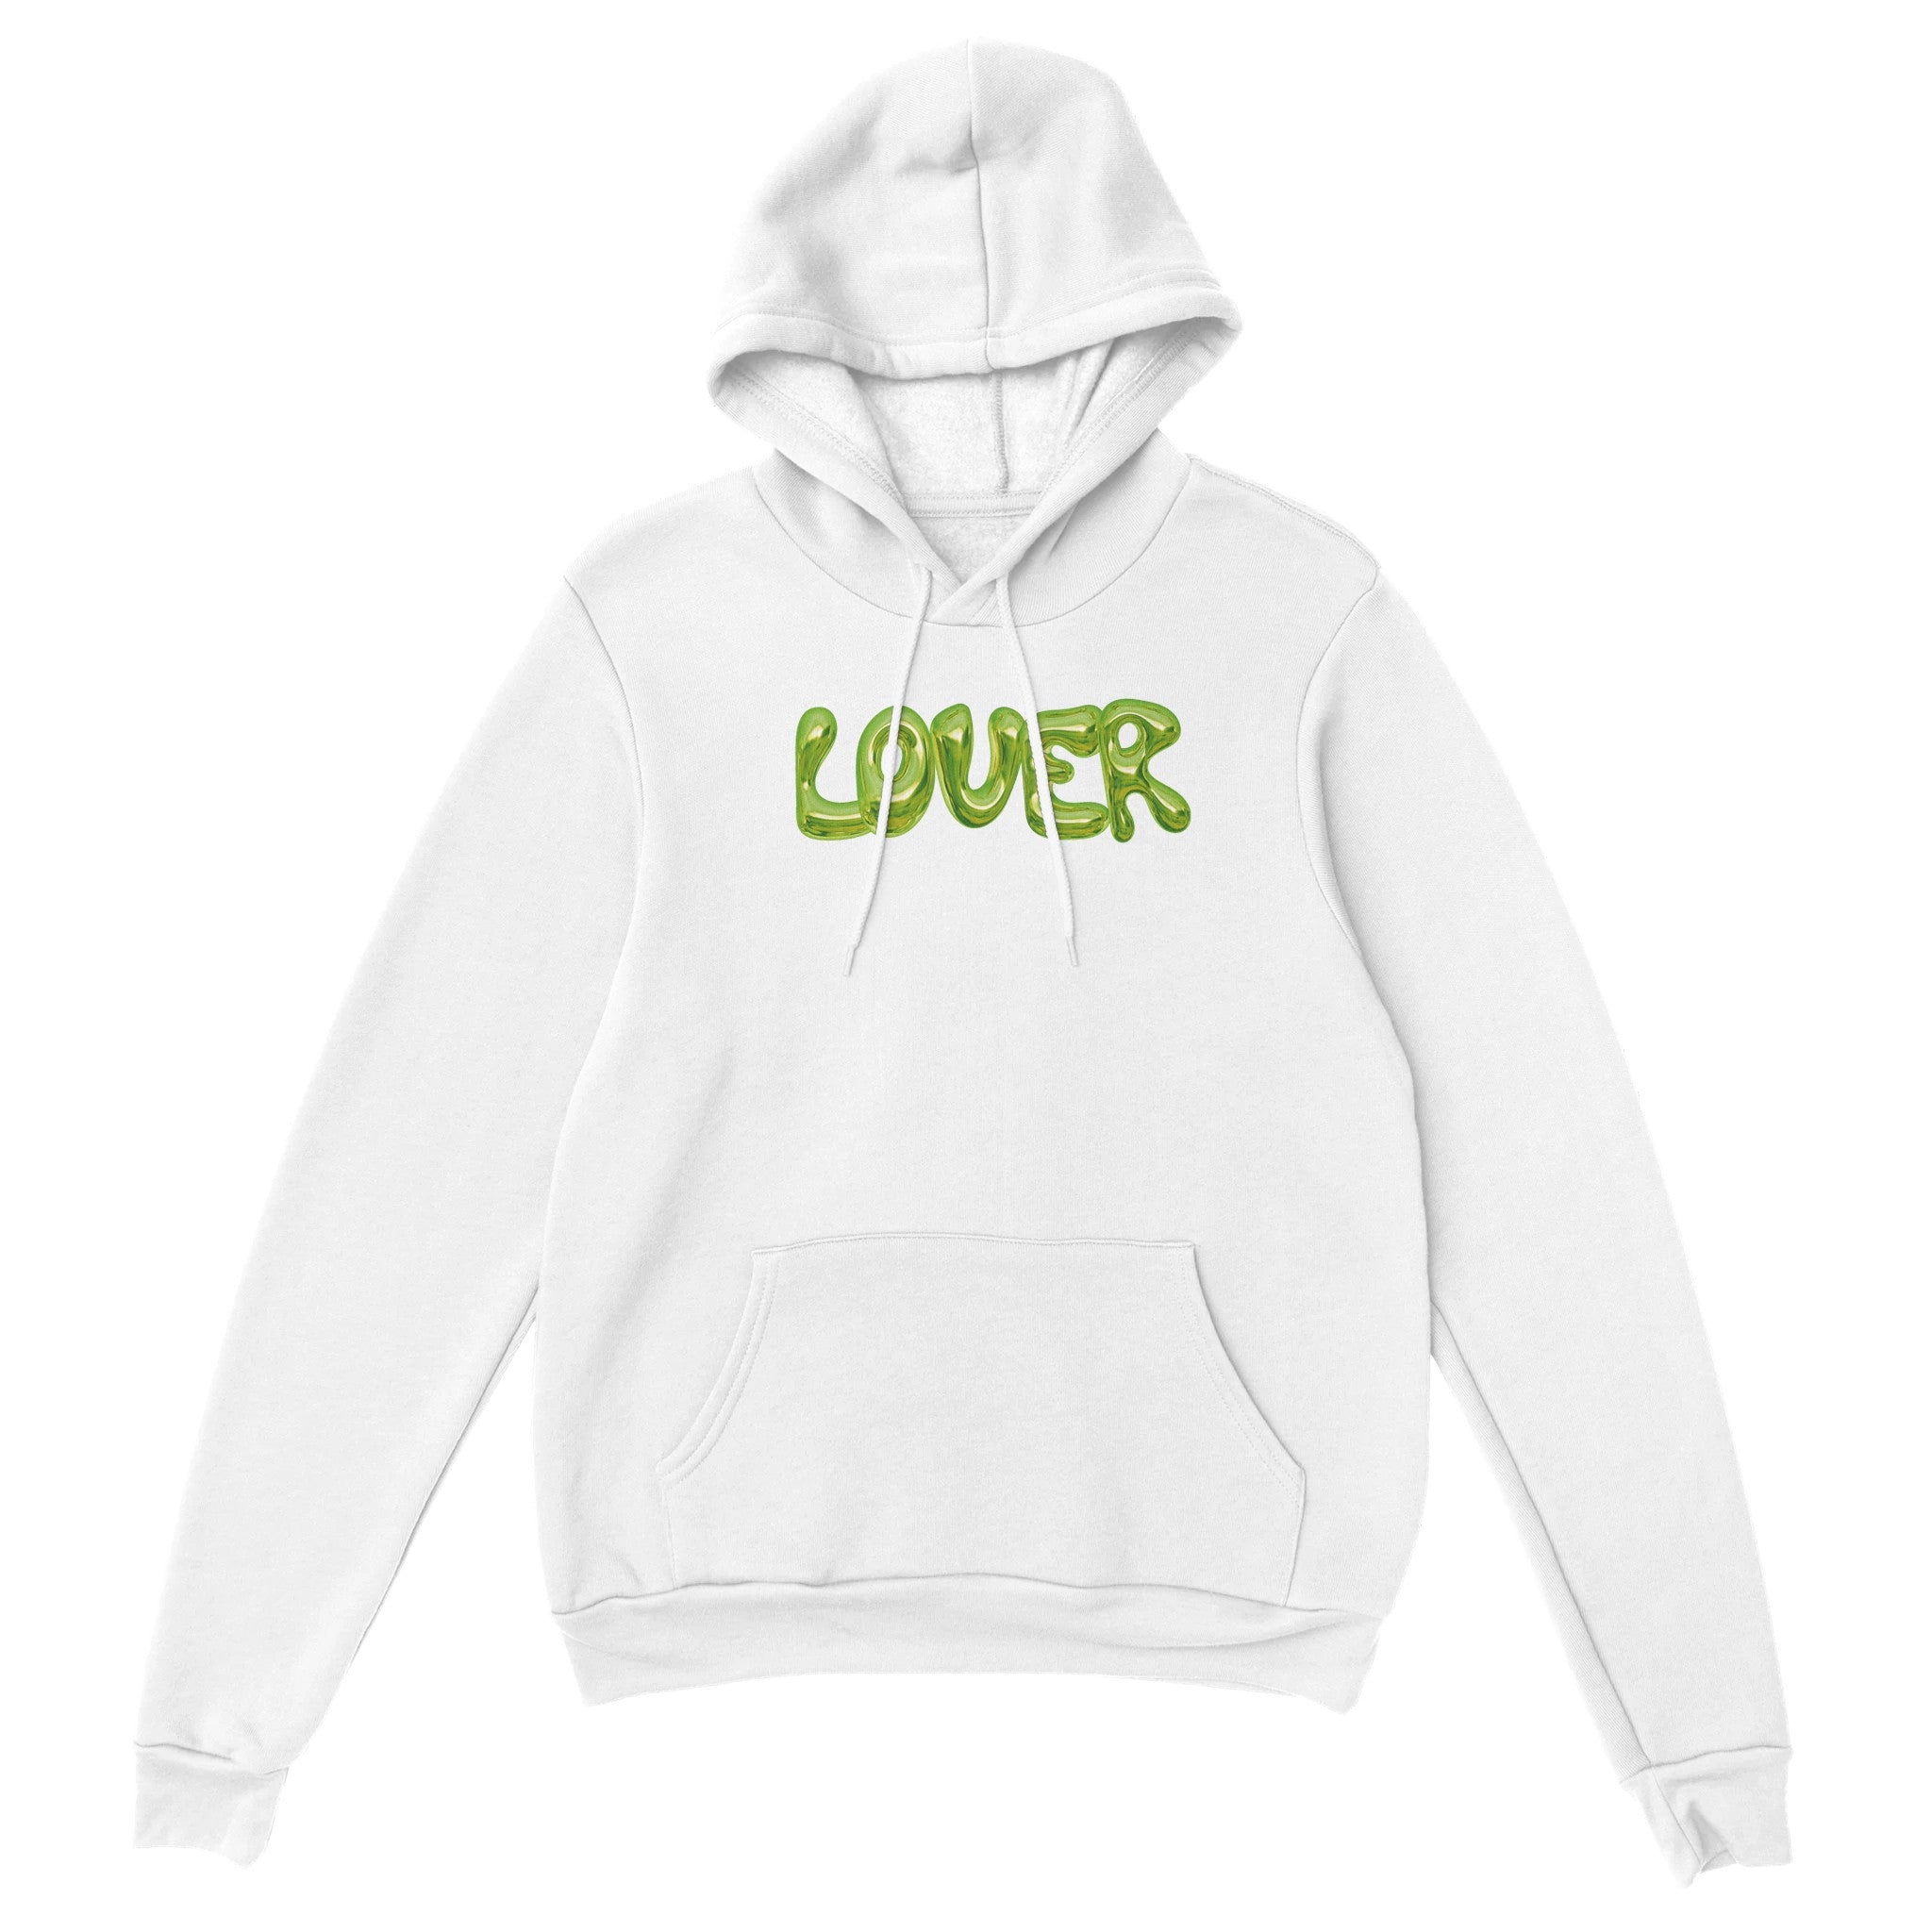 'Lover' hoodie - In Print We Trust